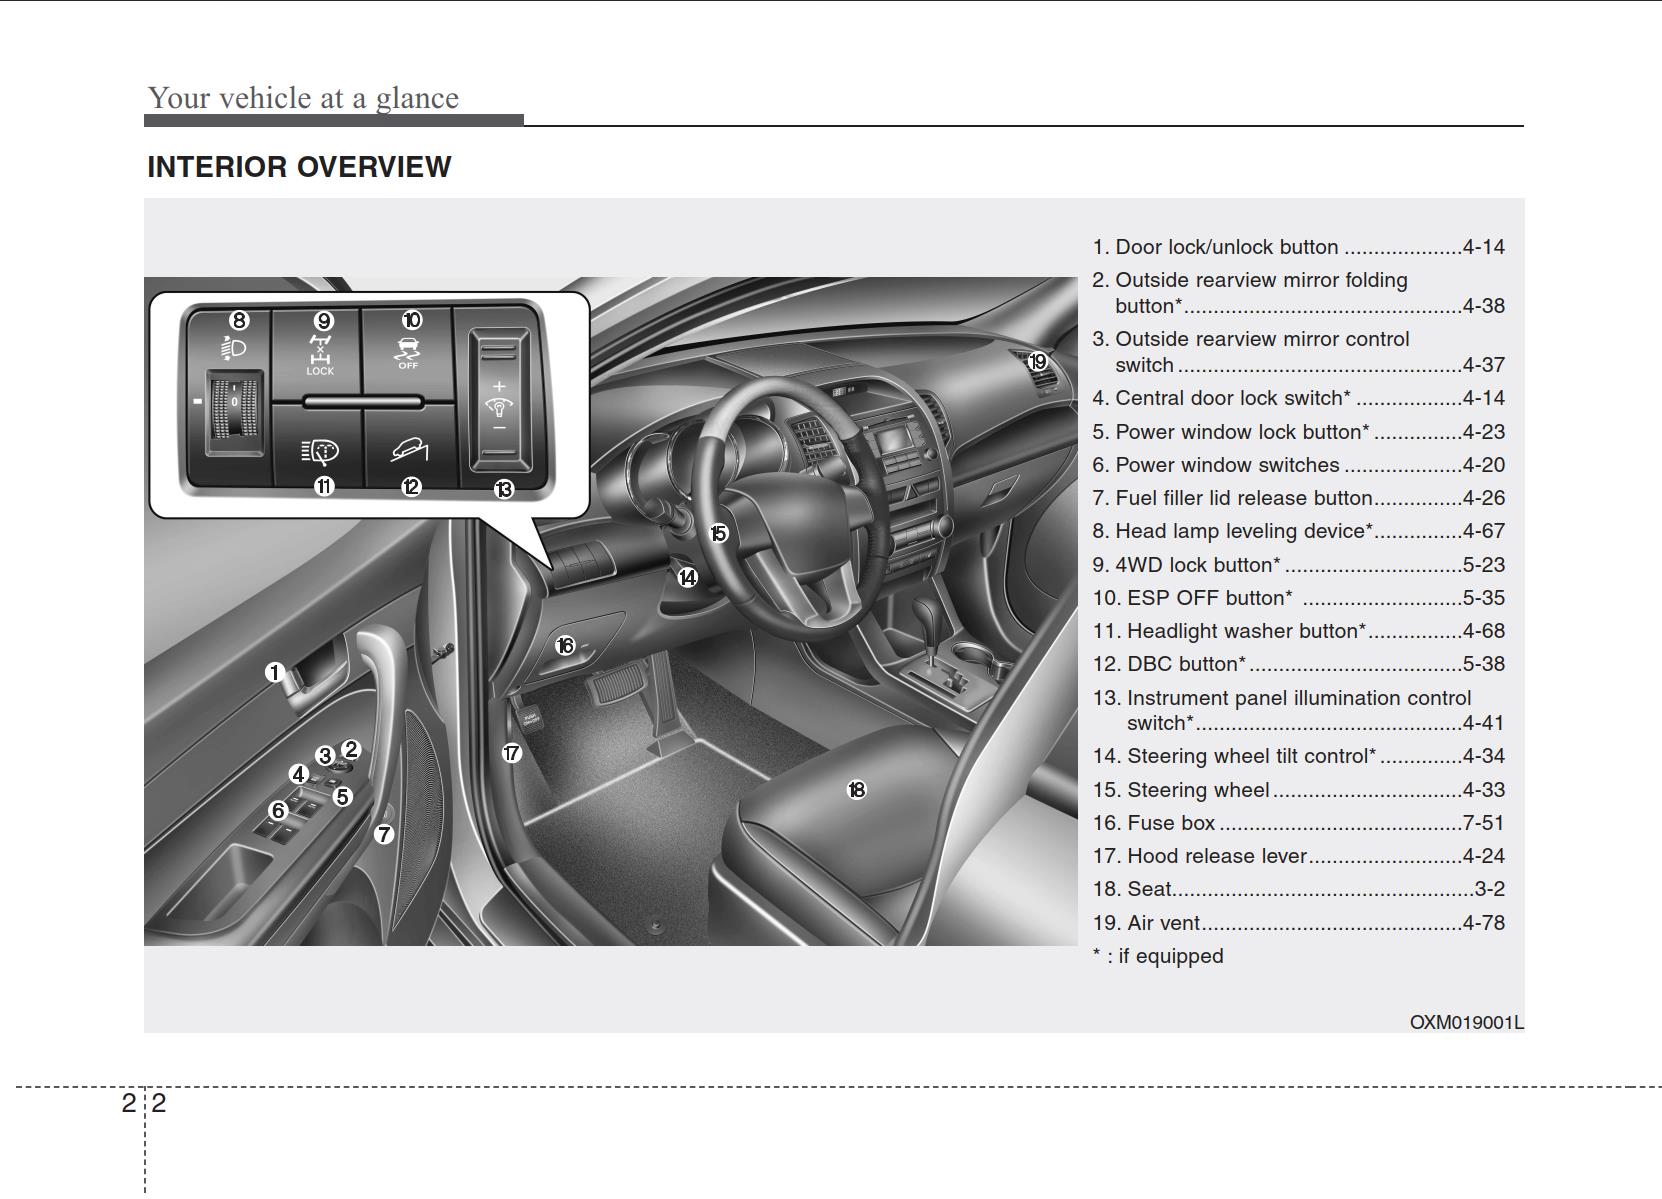 KIA Sorento 2010 Owner's Manual PDF Download